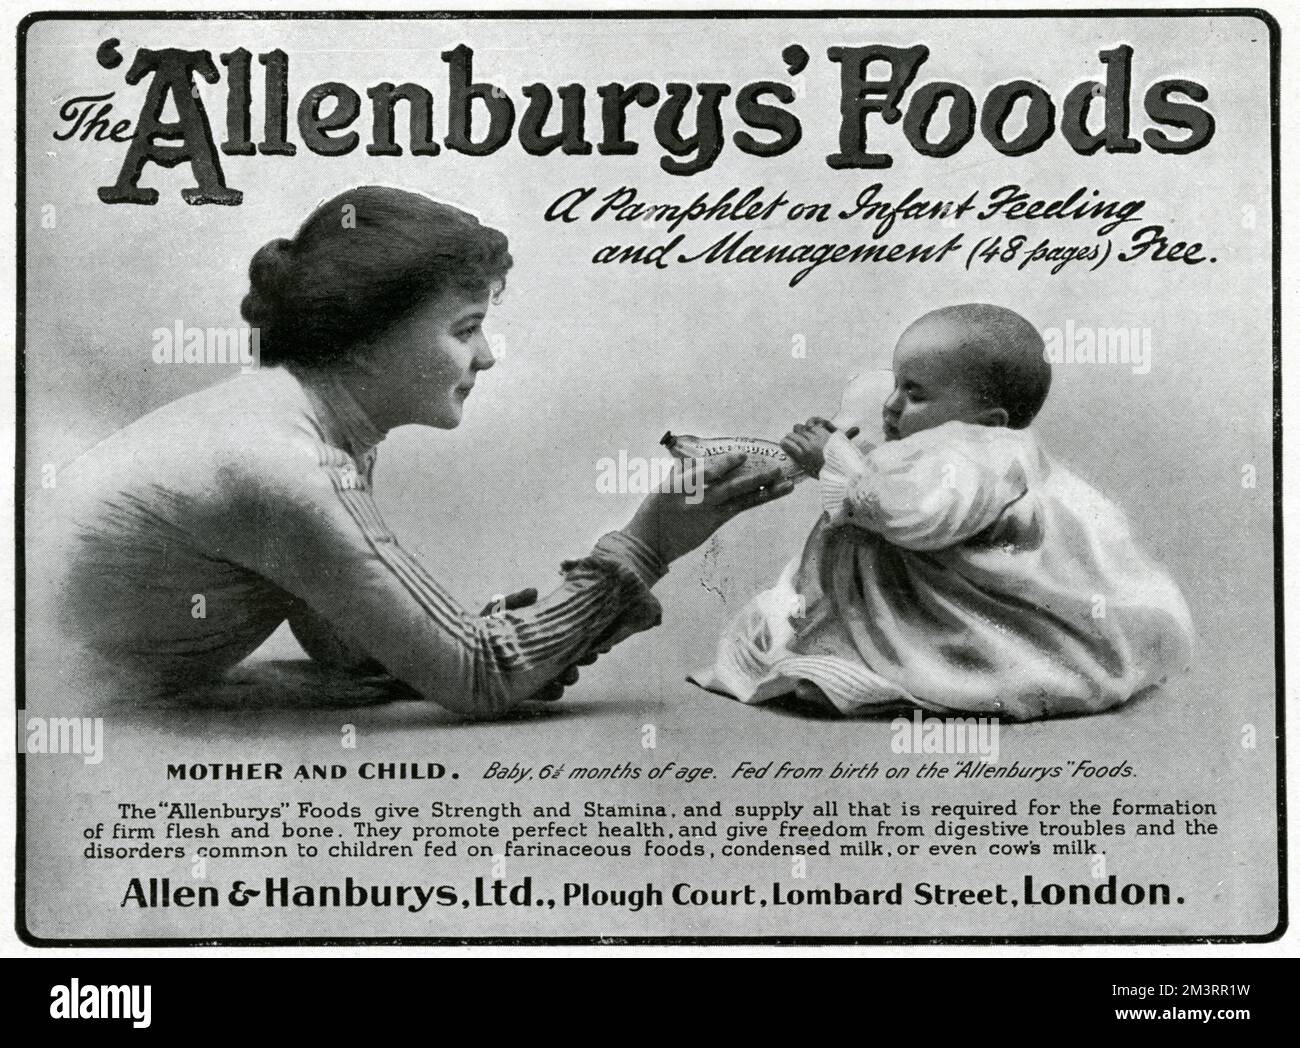 El biberón 'Allenburys' alimenta a los bebés desde el nacimiento dándole fuerza y resistencia a los bebés. Fecha: 1905 Foto de stock